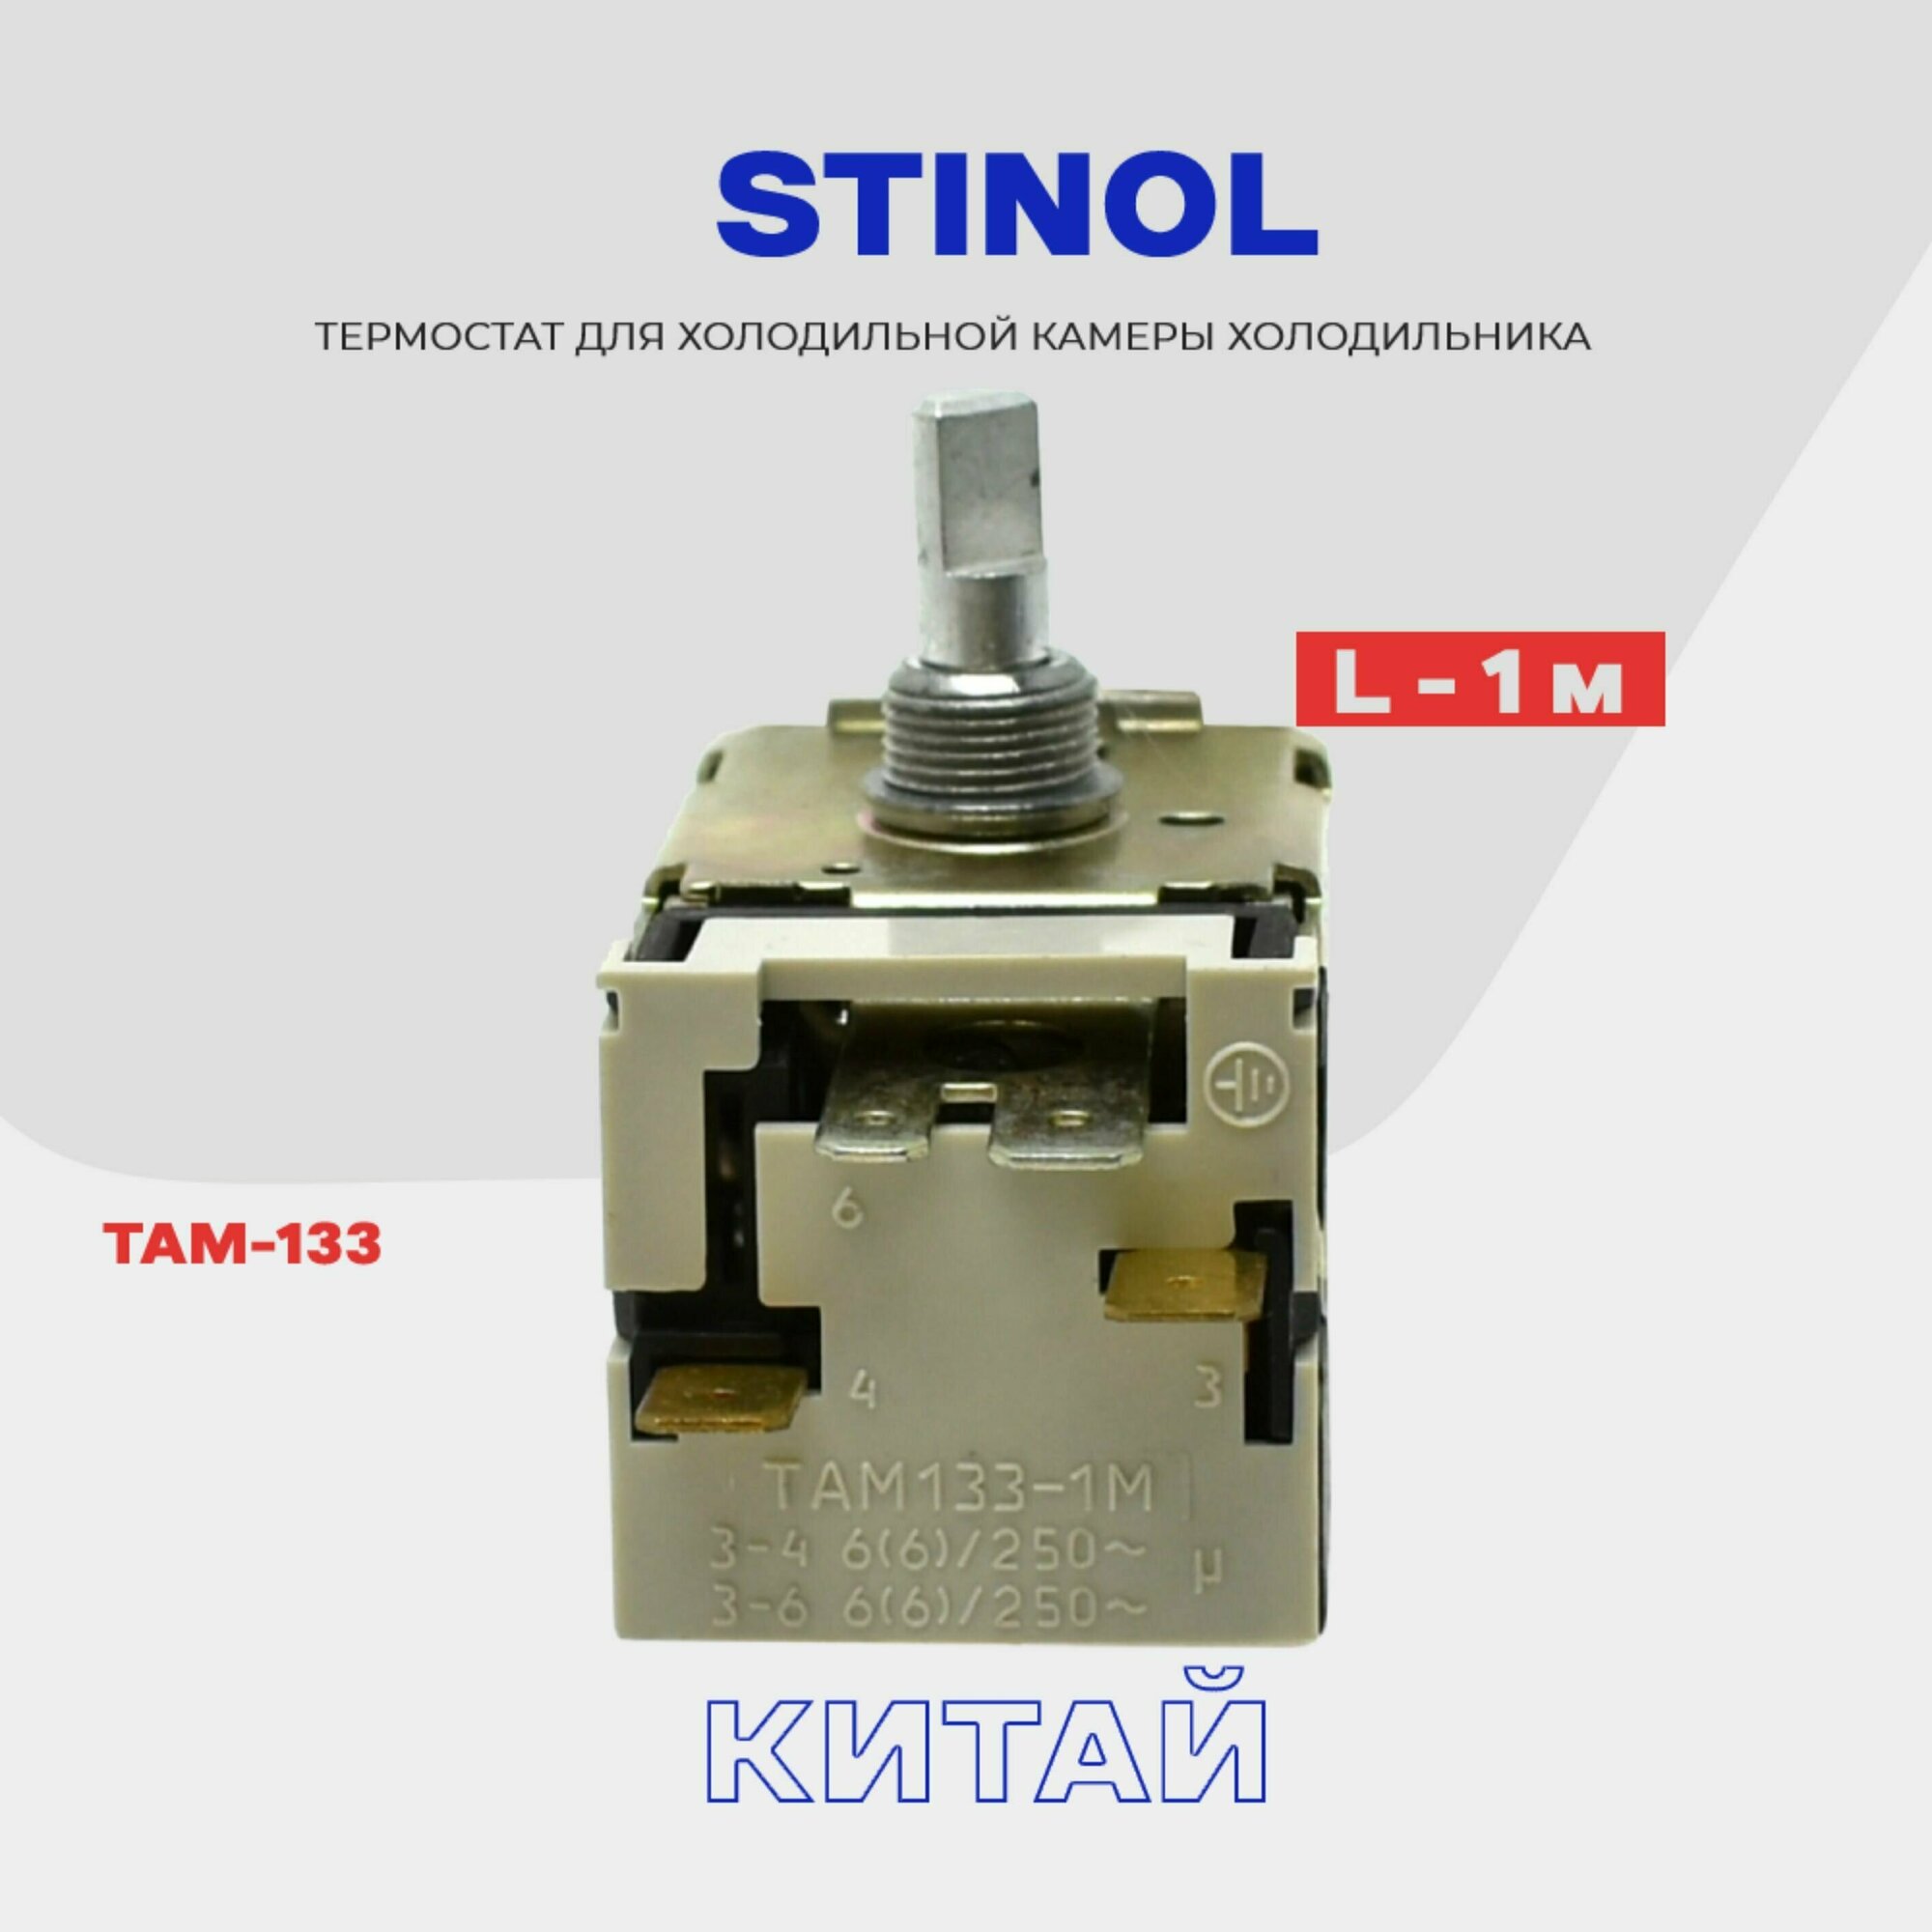 Термостат-терморегулятор для холодильника STINOL ТАМ-133 / Длина 1,3 м (в холодильную камеру)